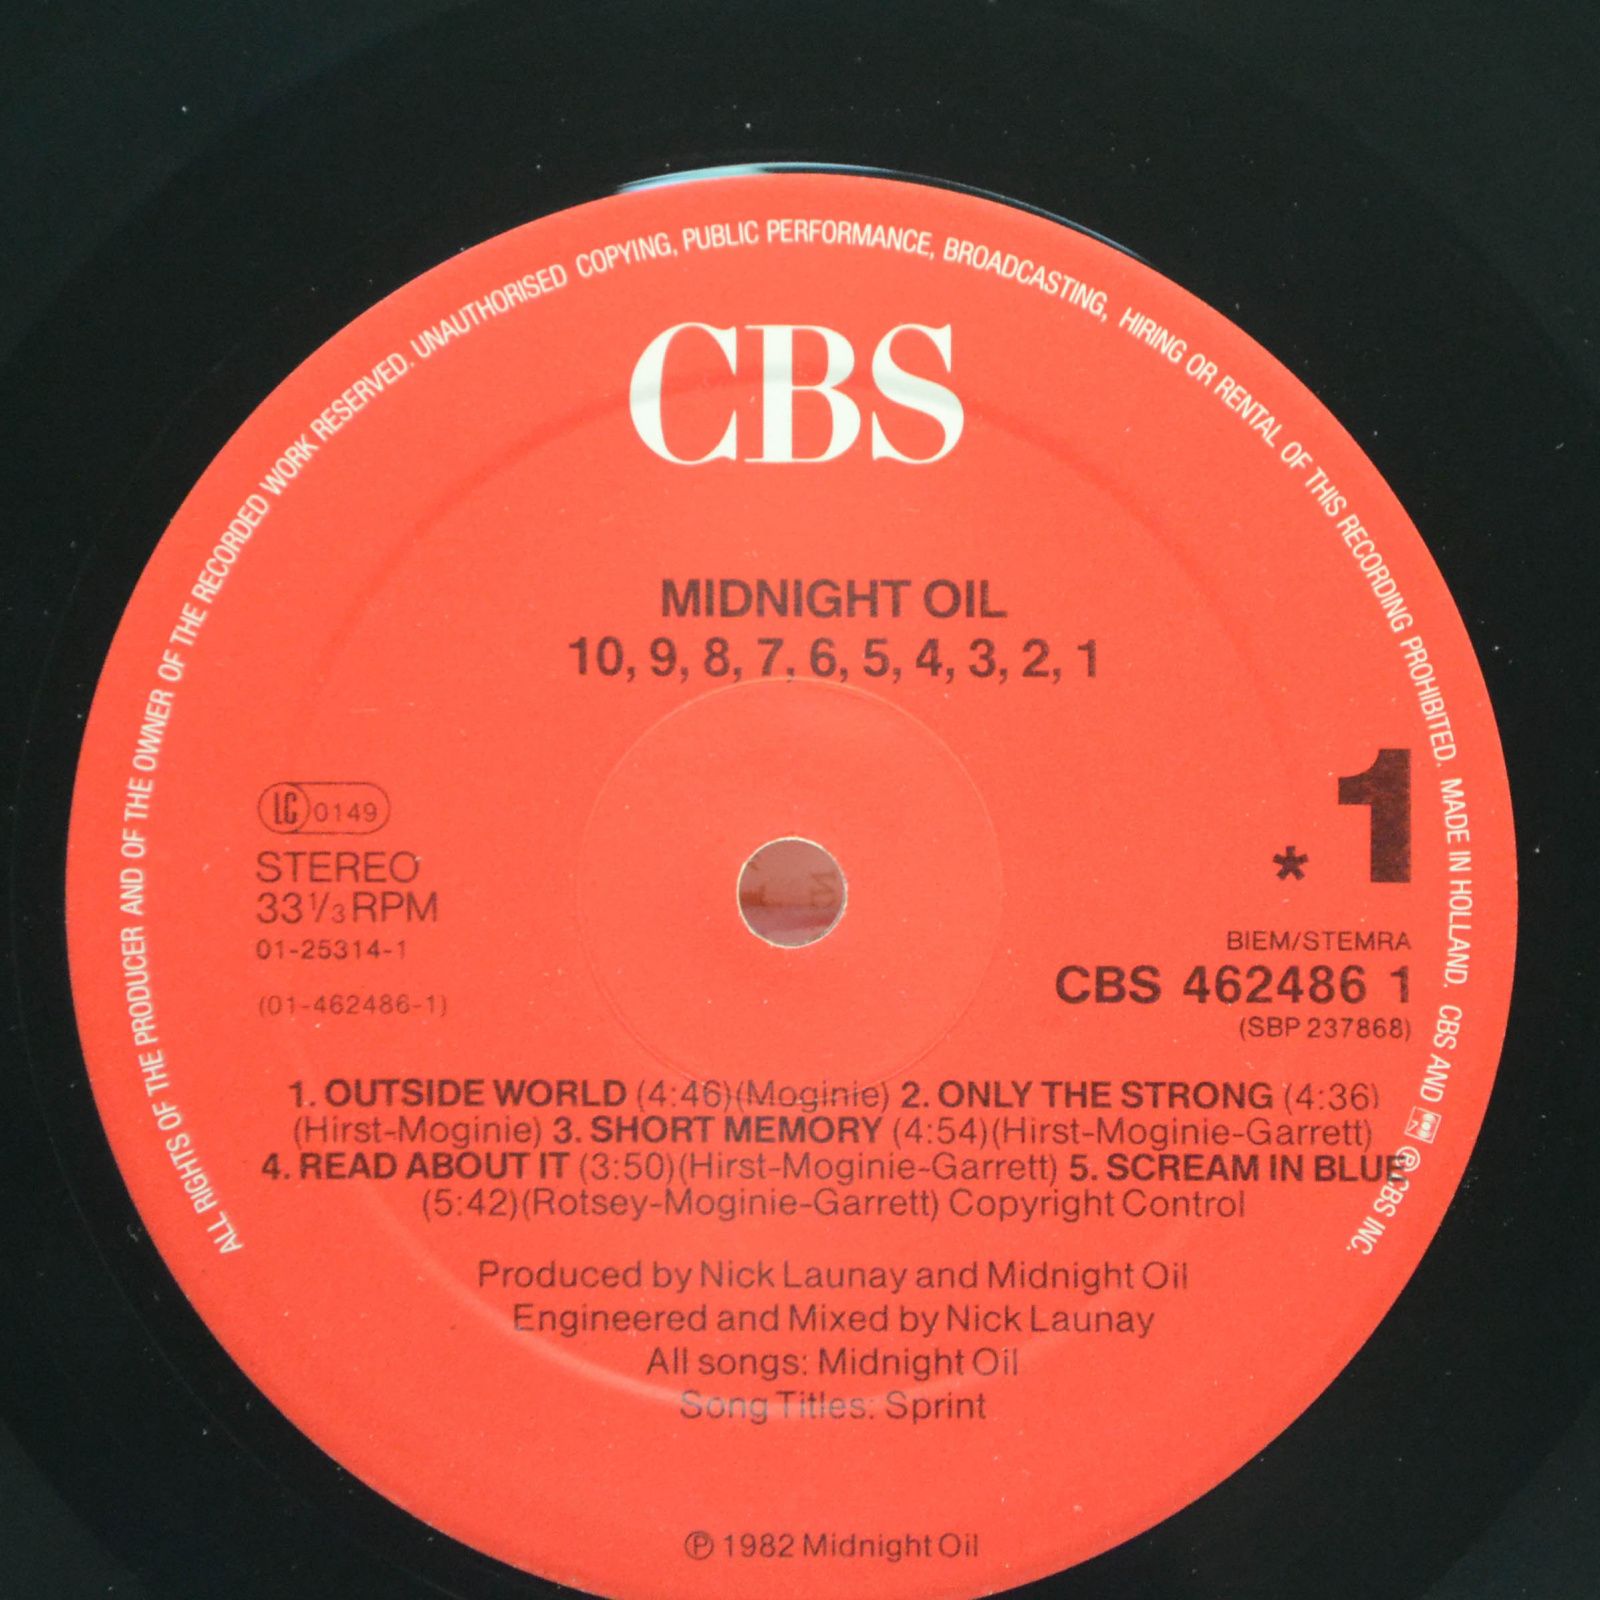 Midnight Oil — 10, 9, 8, 7, 6, 5, 4, 3, 2, 1, 1988